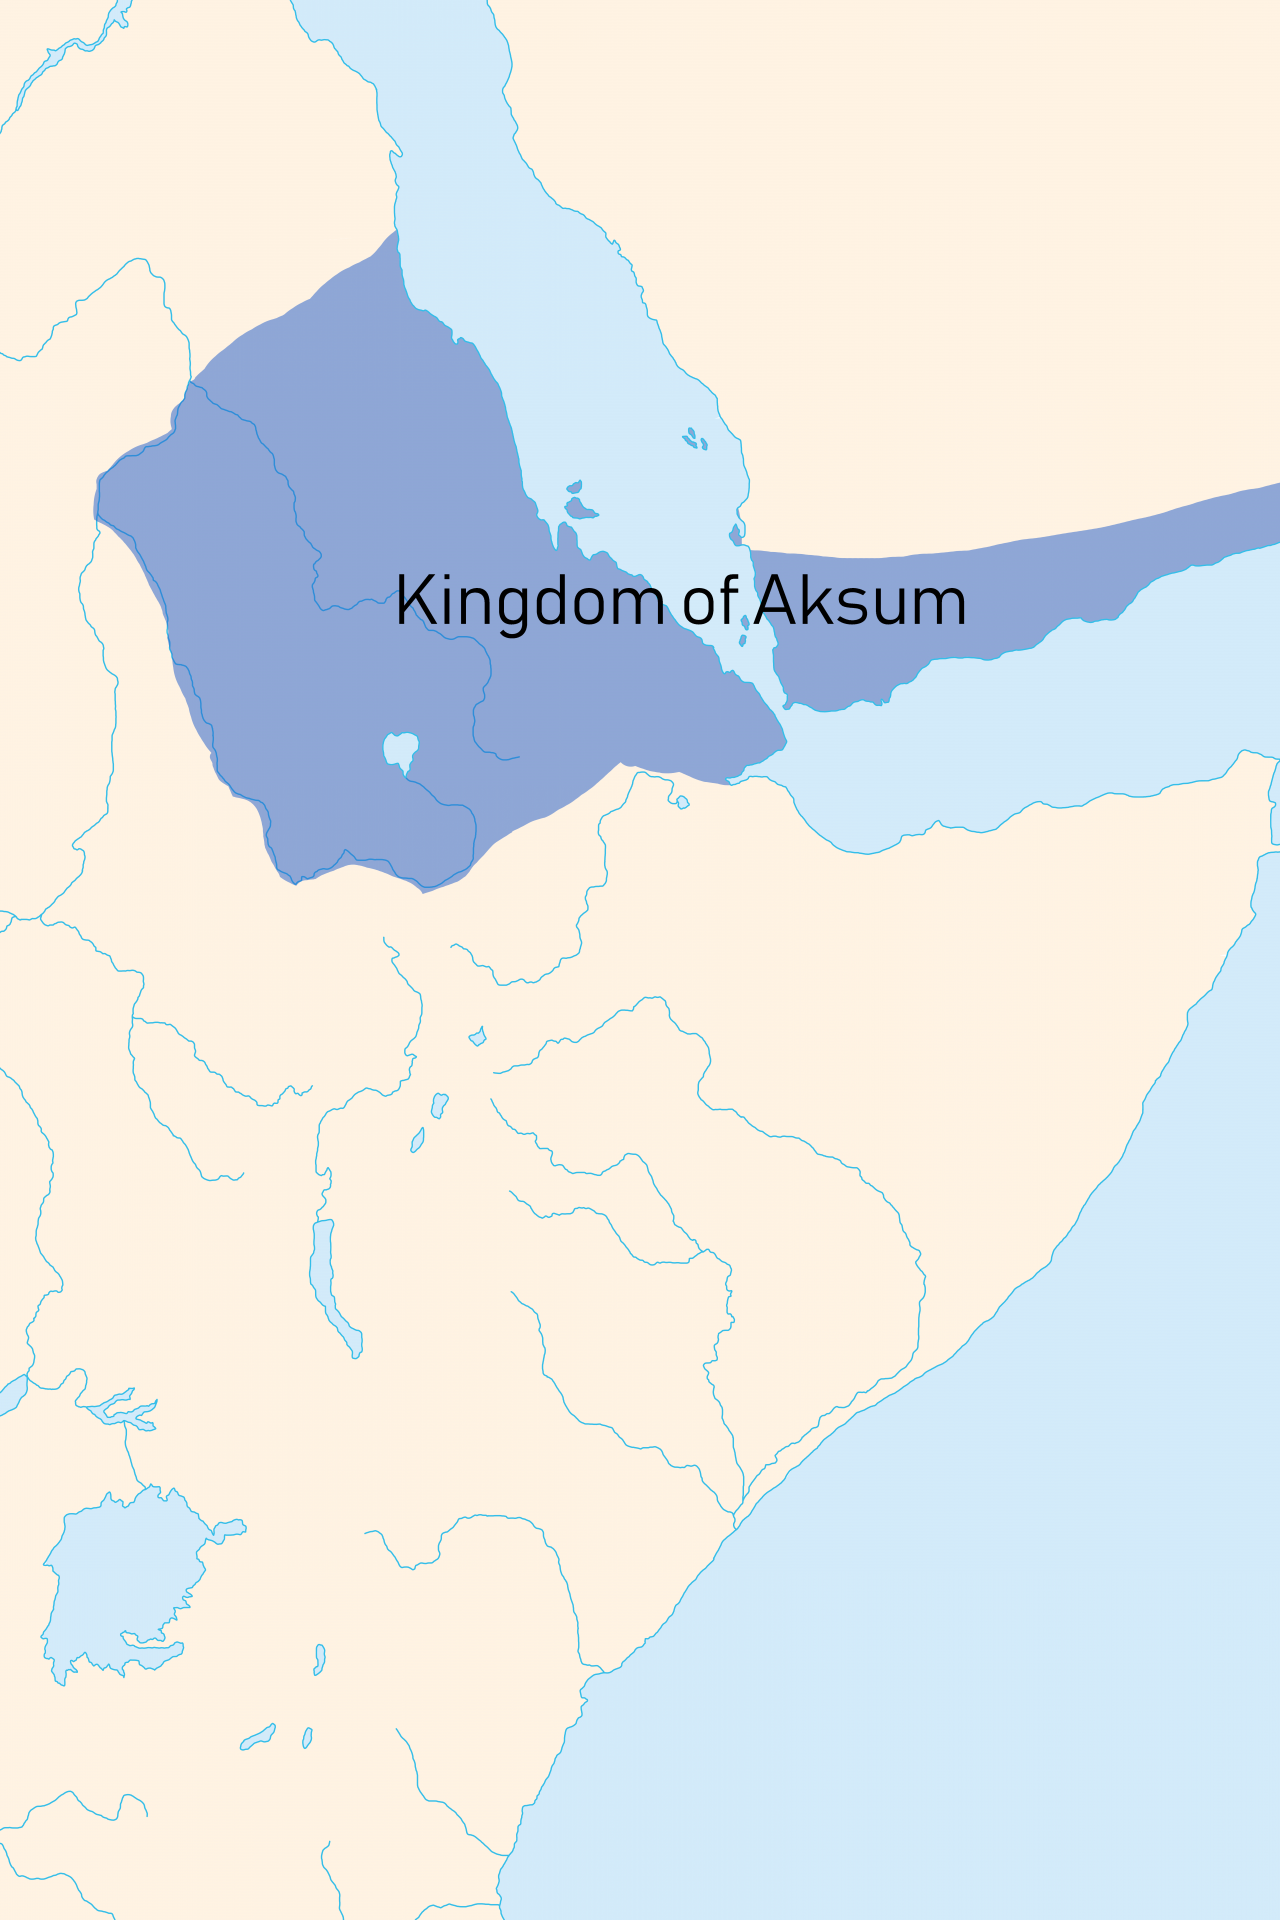 Le royaume d'Aksoum